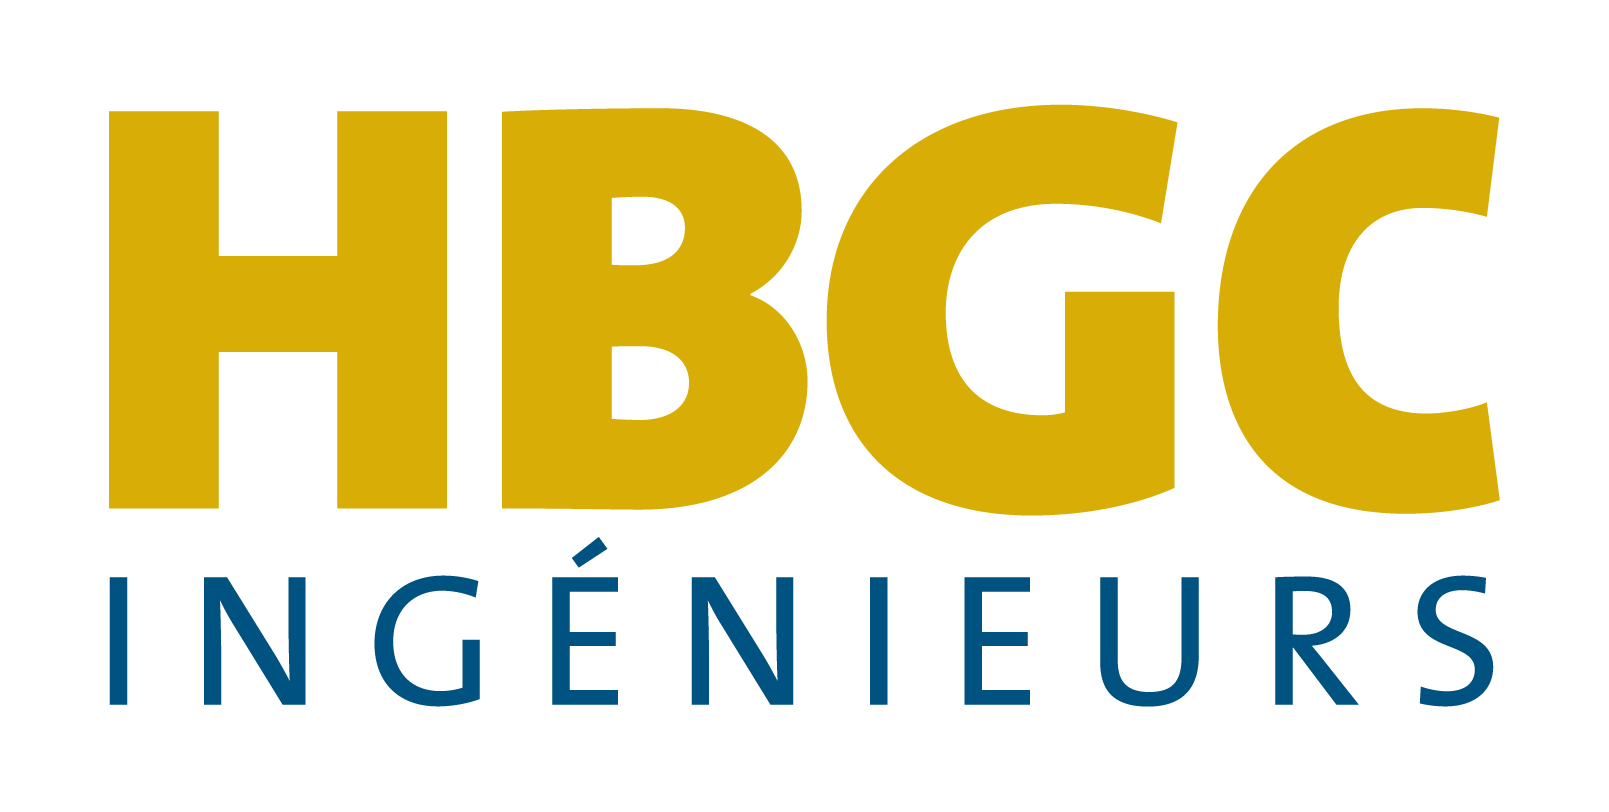 HBGC Ingénieurs